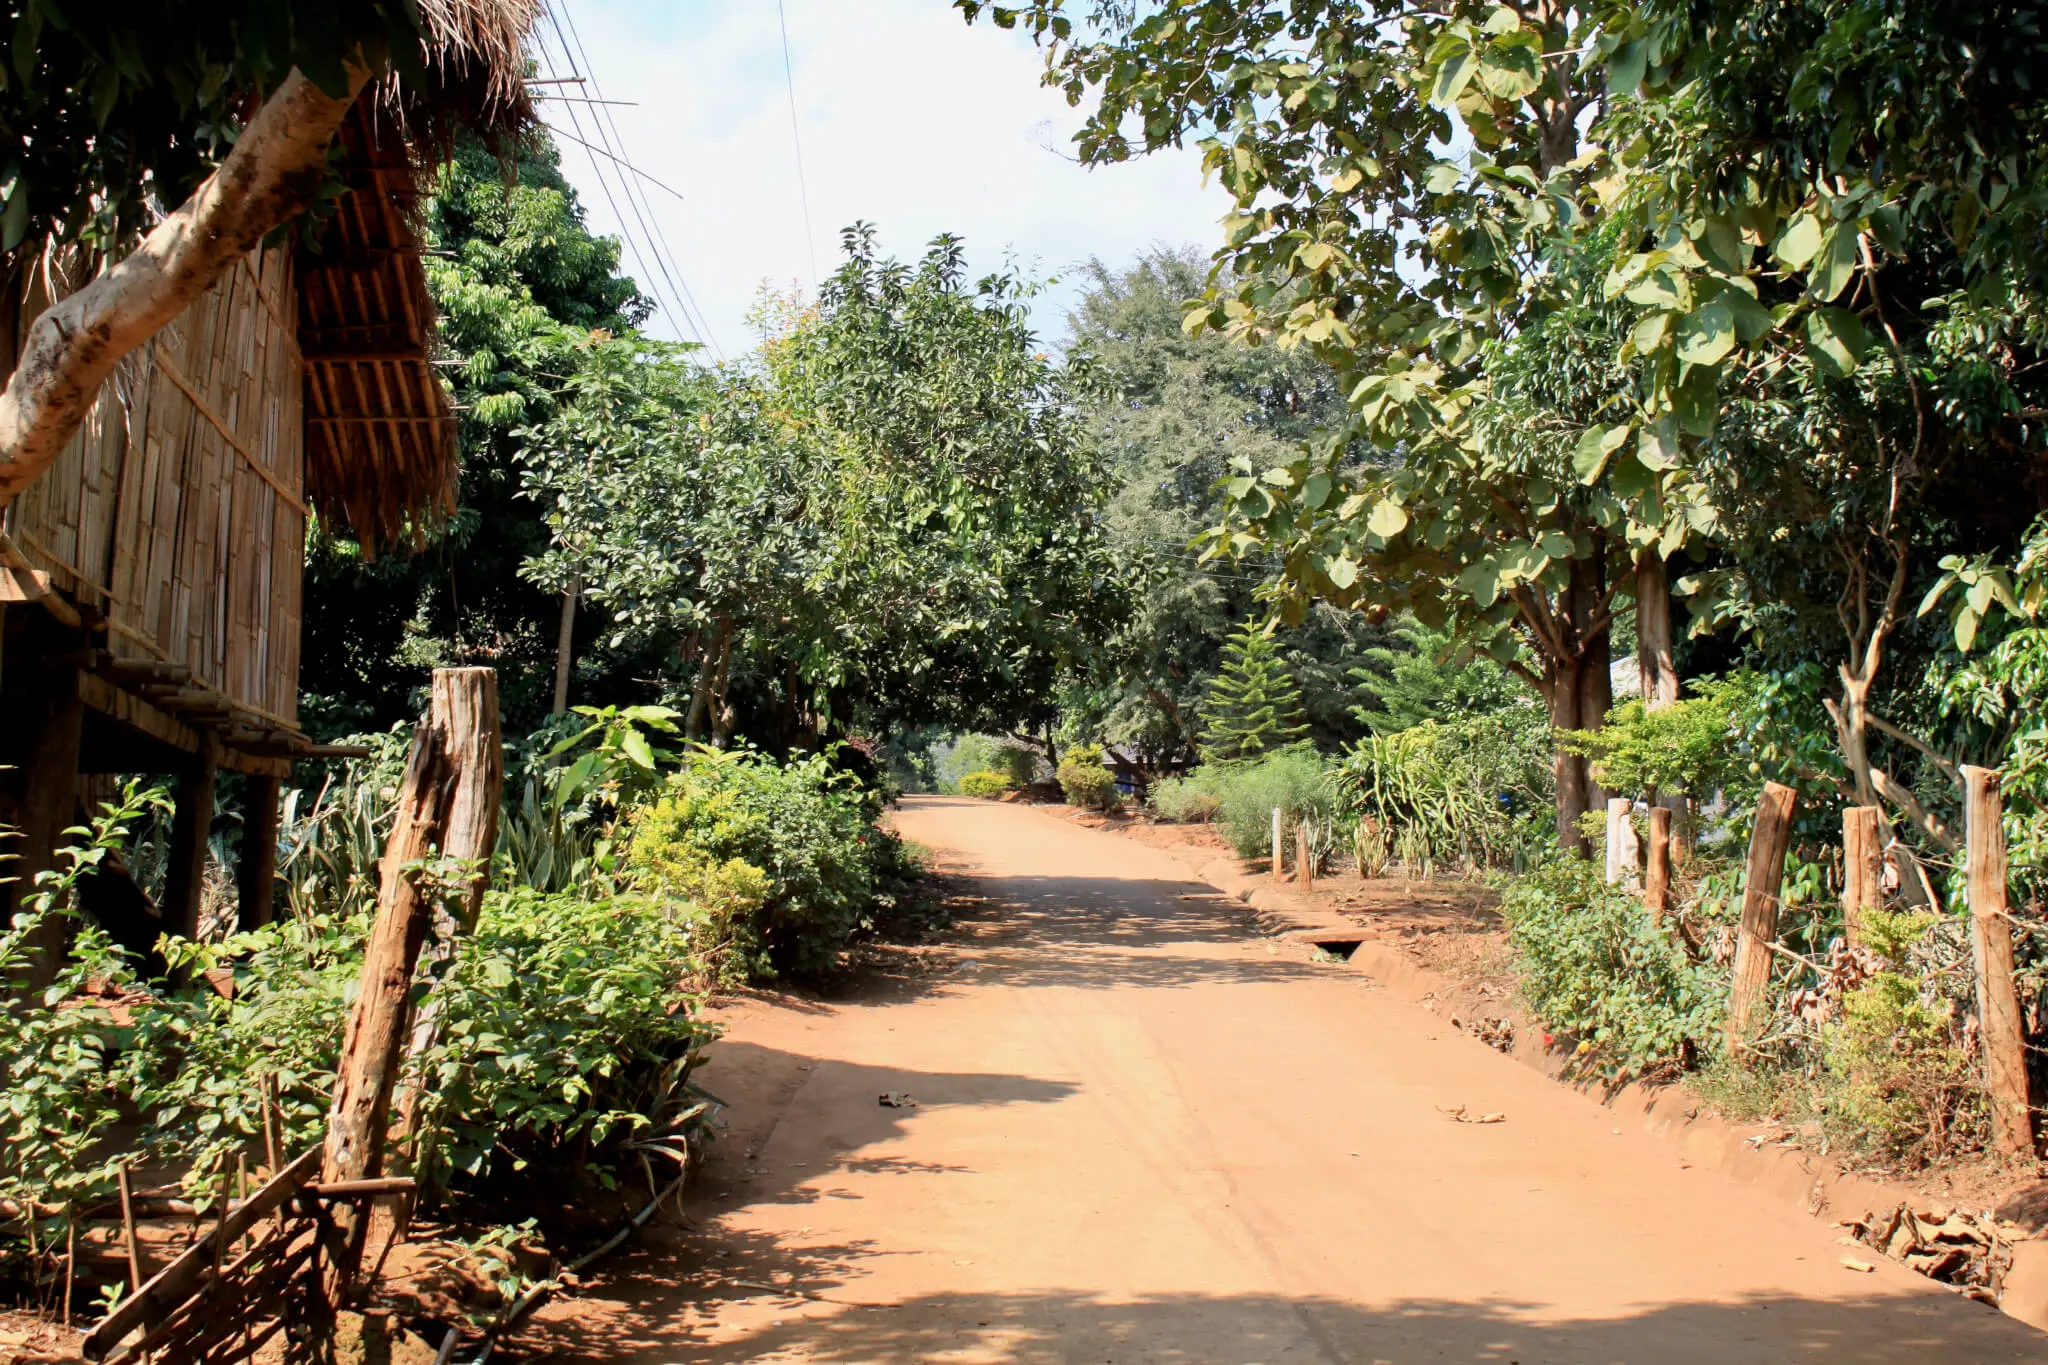 Dirt path through a village in rural Thailand